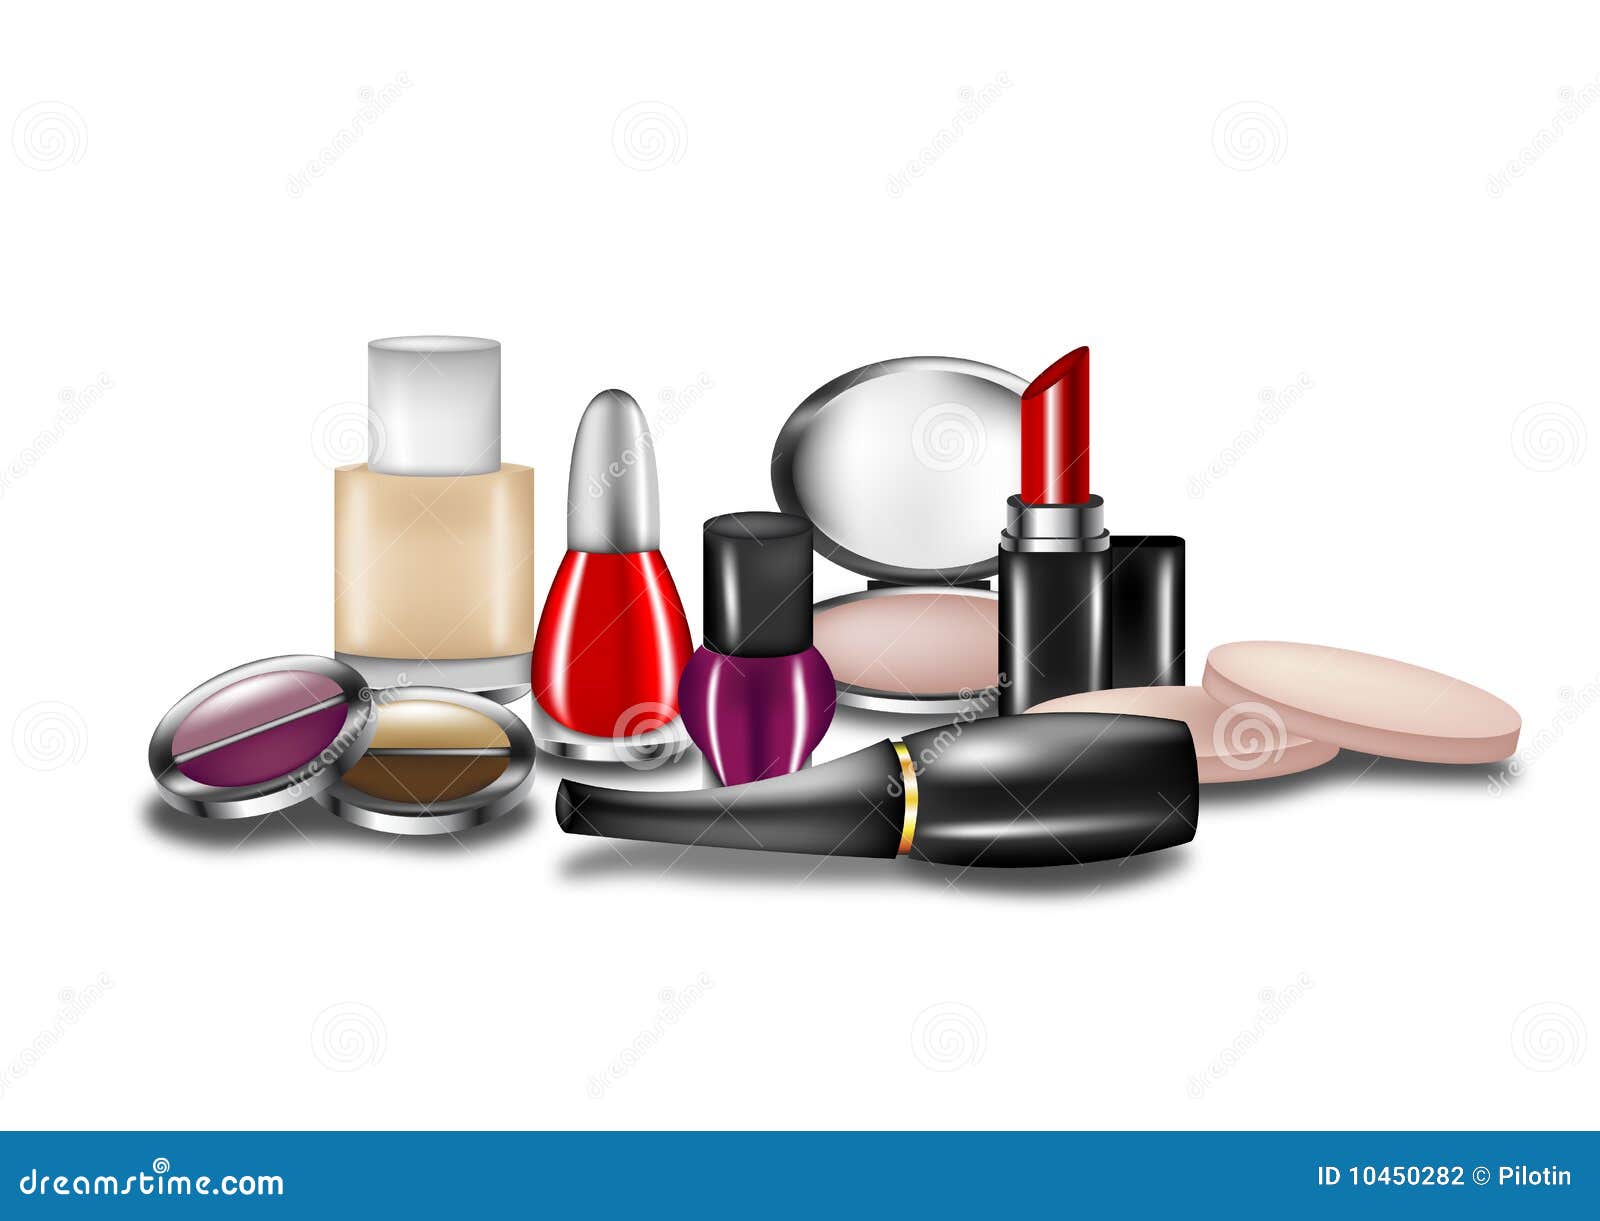  cosmetics